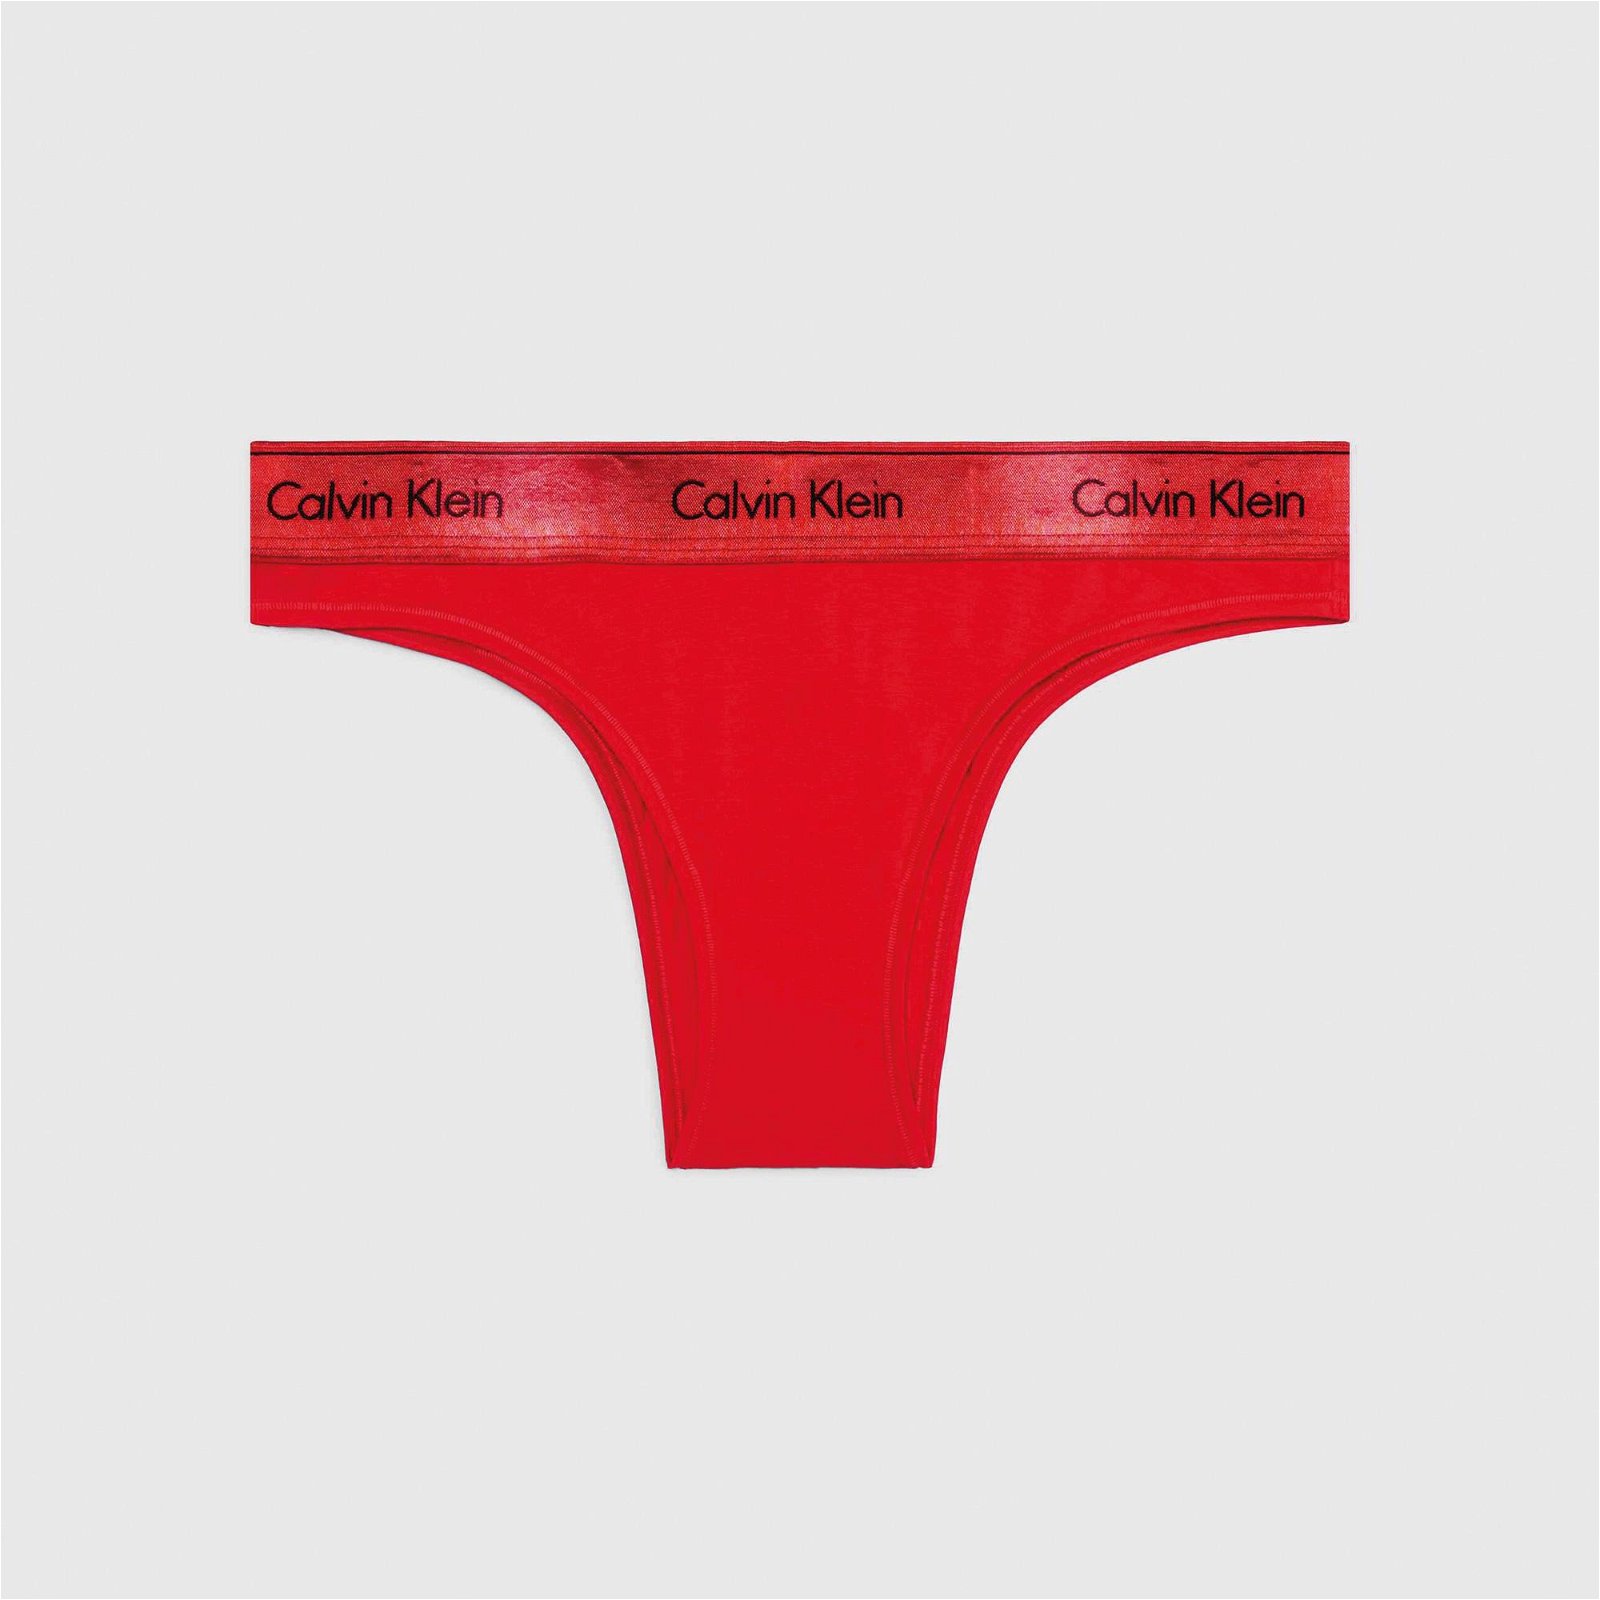 Calvin Klein Brazilian Kadın Kırmızı Külot